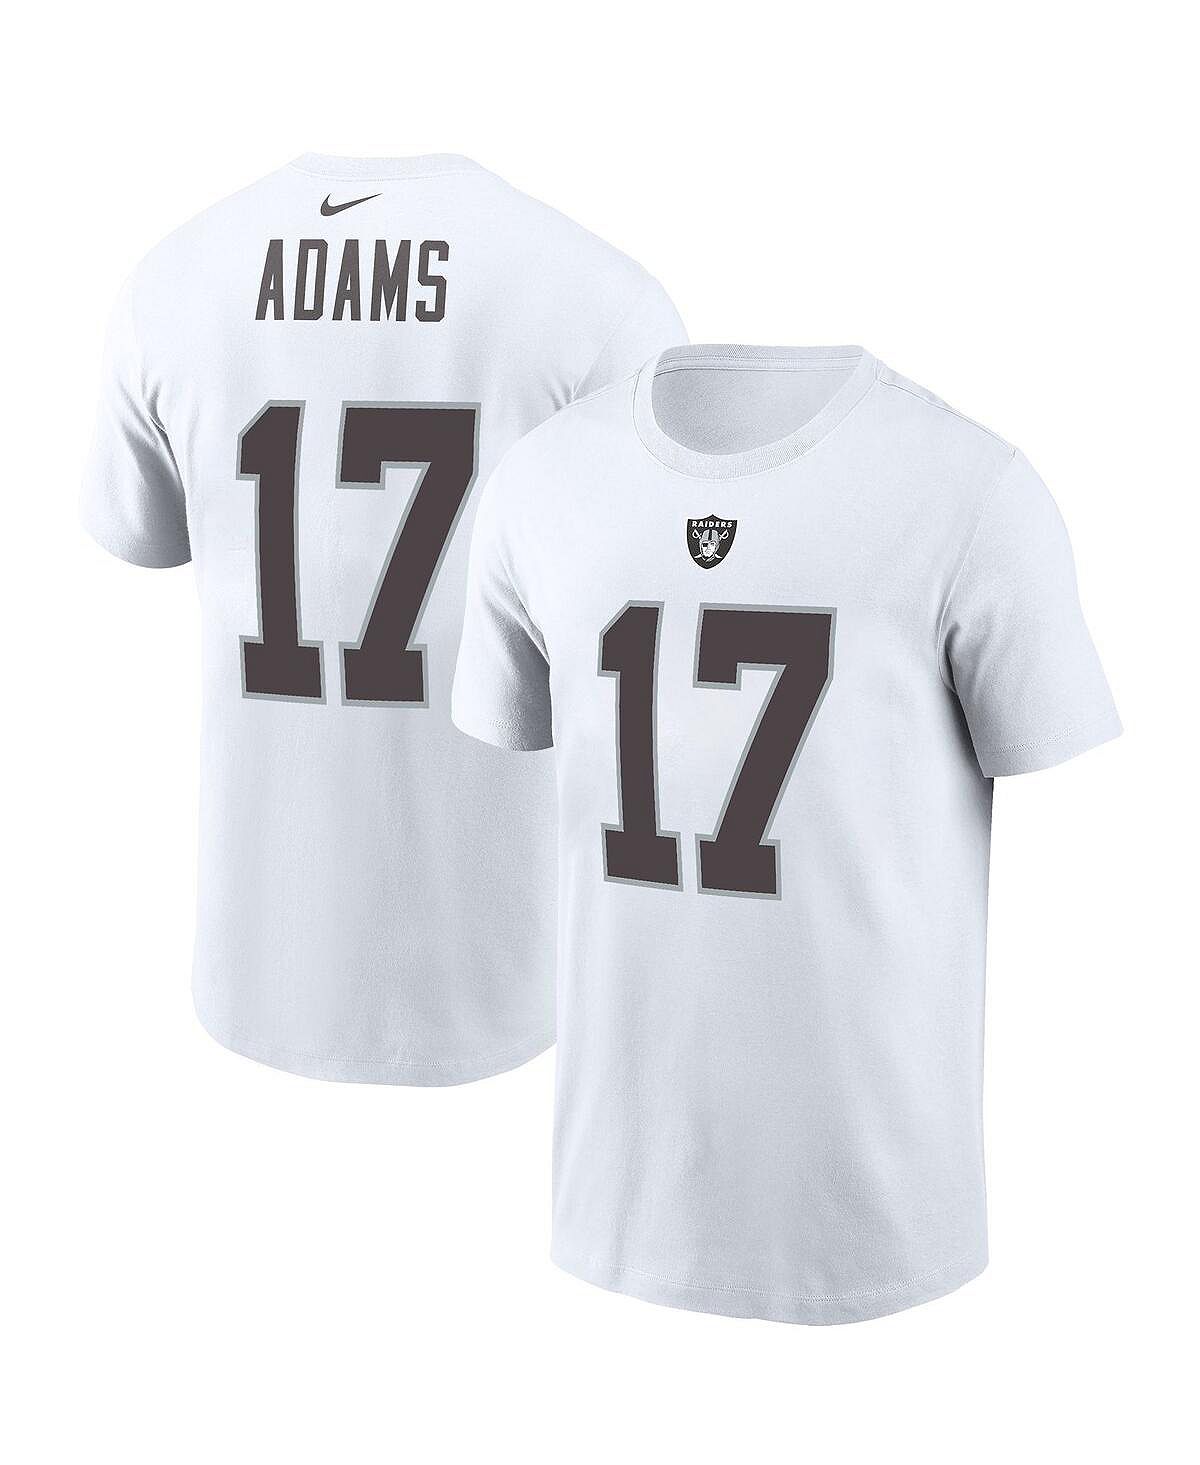 Мужская футболка davante adams white las vegas raiders с именем и номером игрока Nike, белый цена и фото